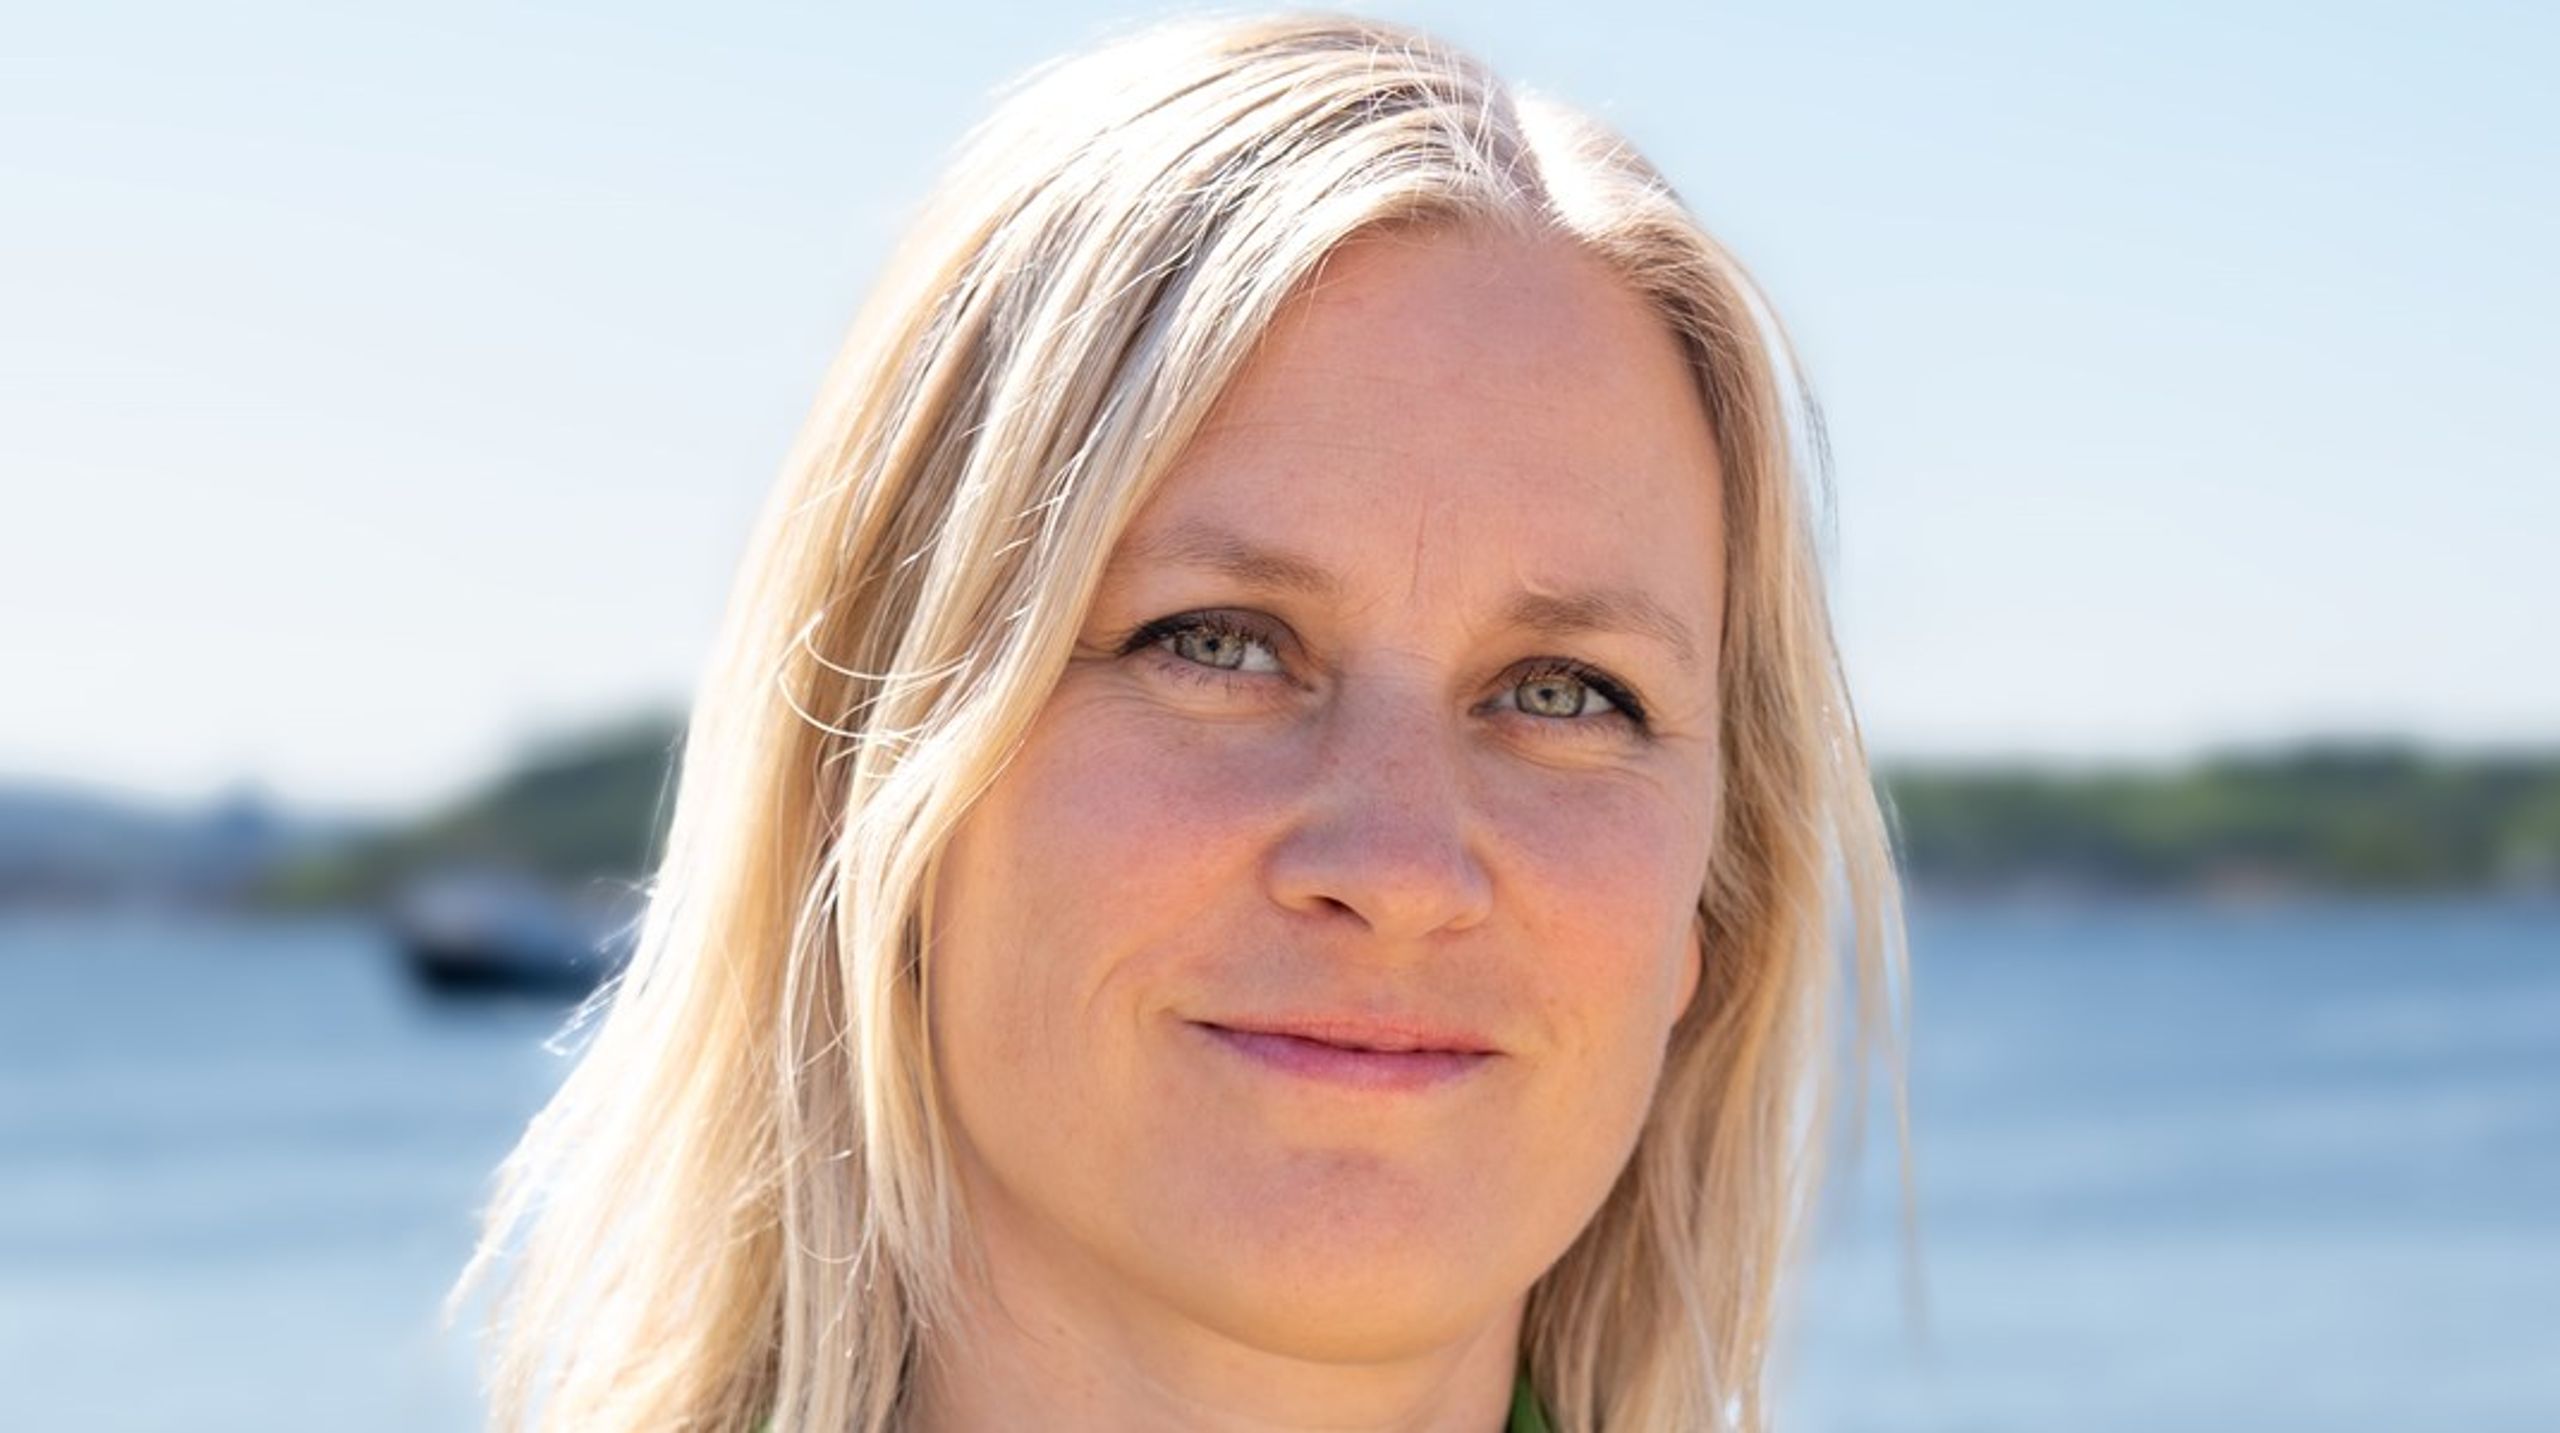 Ragnhild Waagaard startet 1. oktober som prosjektleder i Kommunenettverk for Klimaomstilling. Hun kommer fra stillingen som leder for klima og energi i WWF Verdens naturfond.